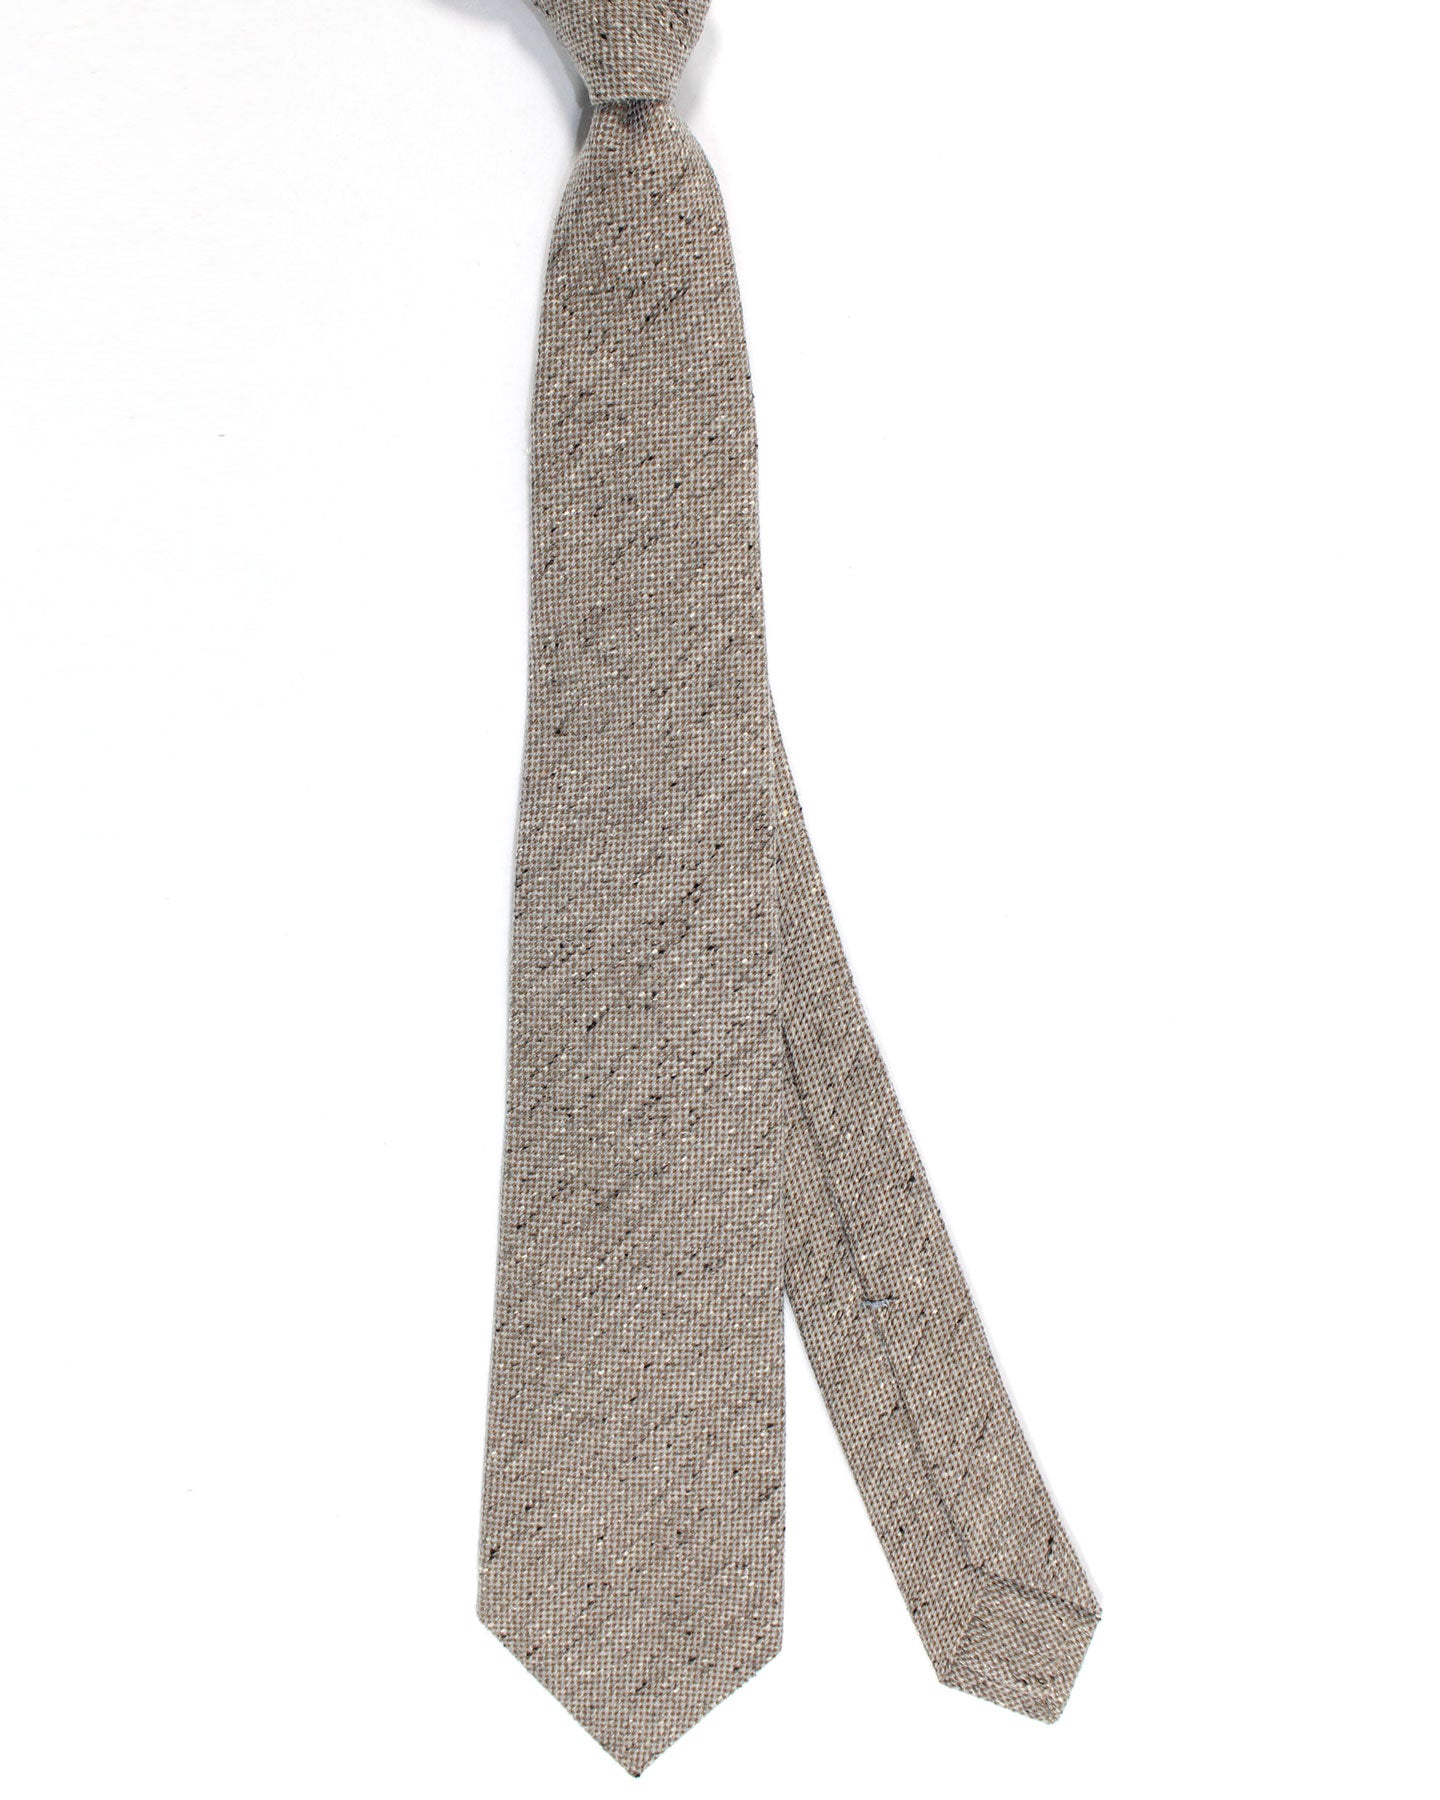 Kiton Wool Silk Tie Gray Taupe Speckles Design - Sevenfold Necktie